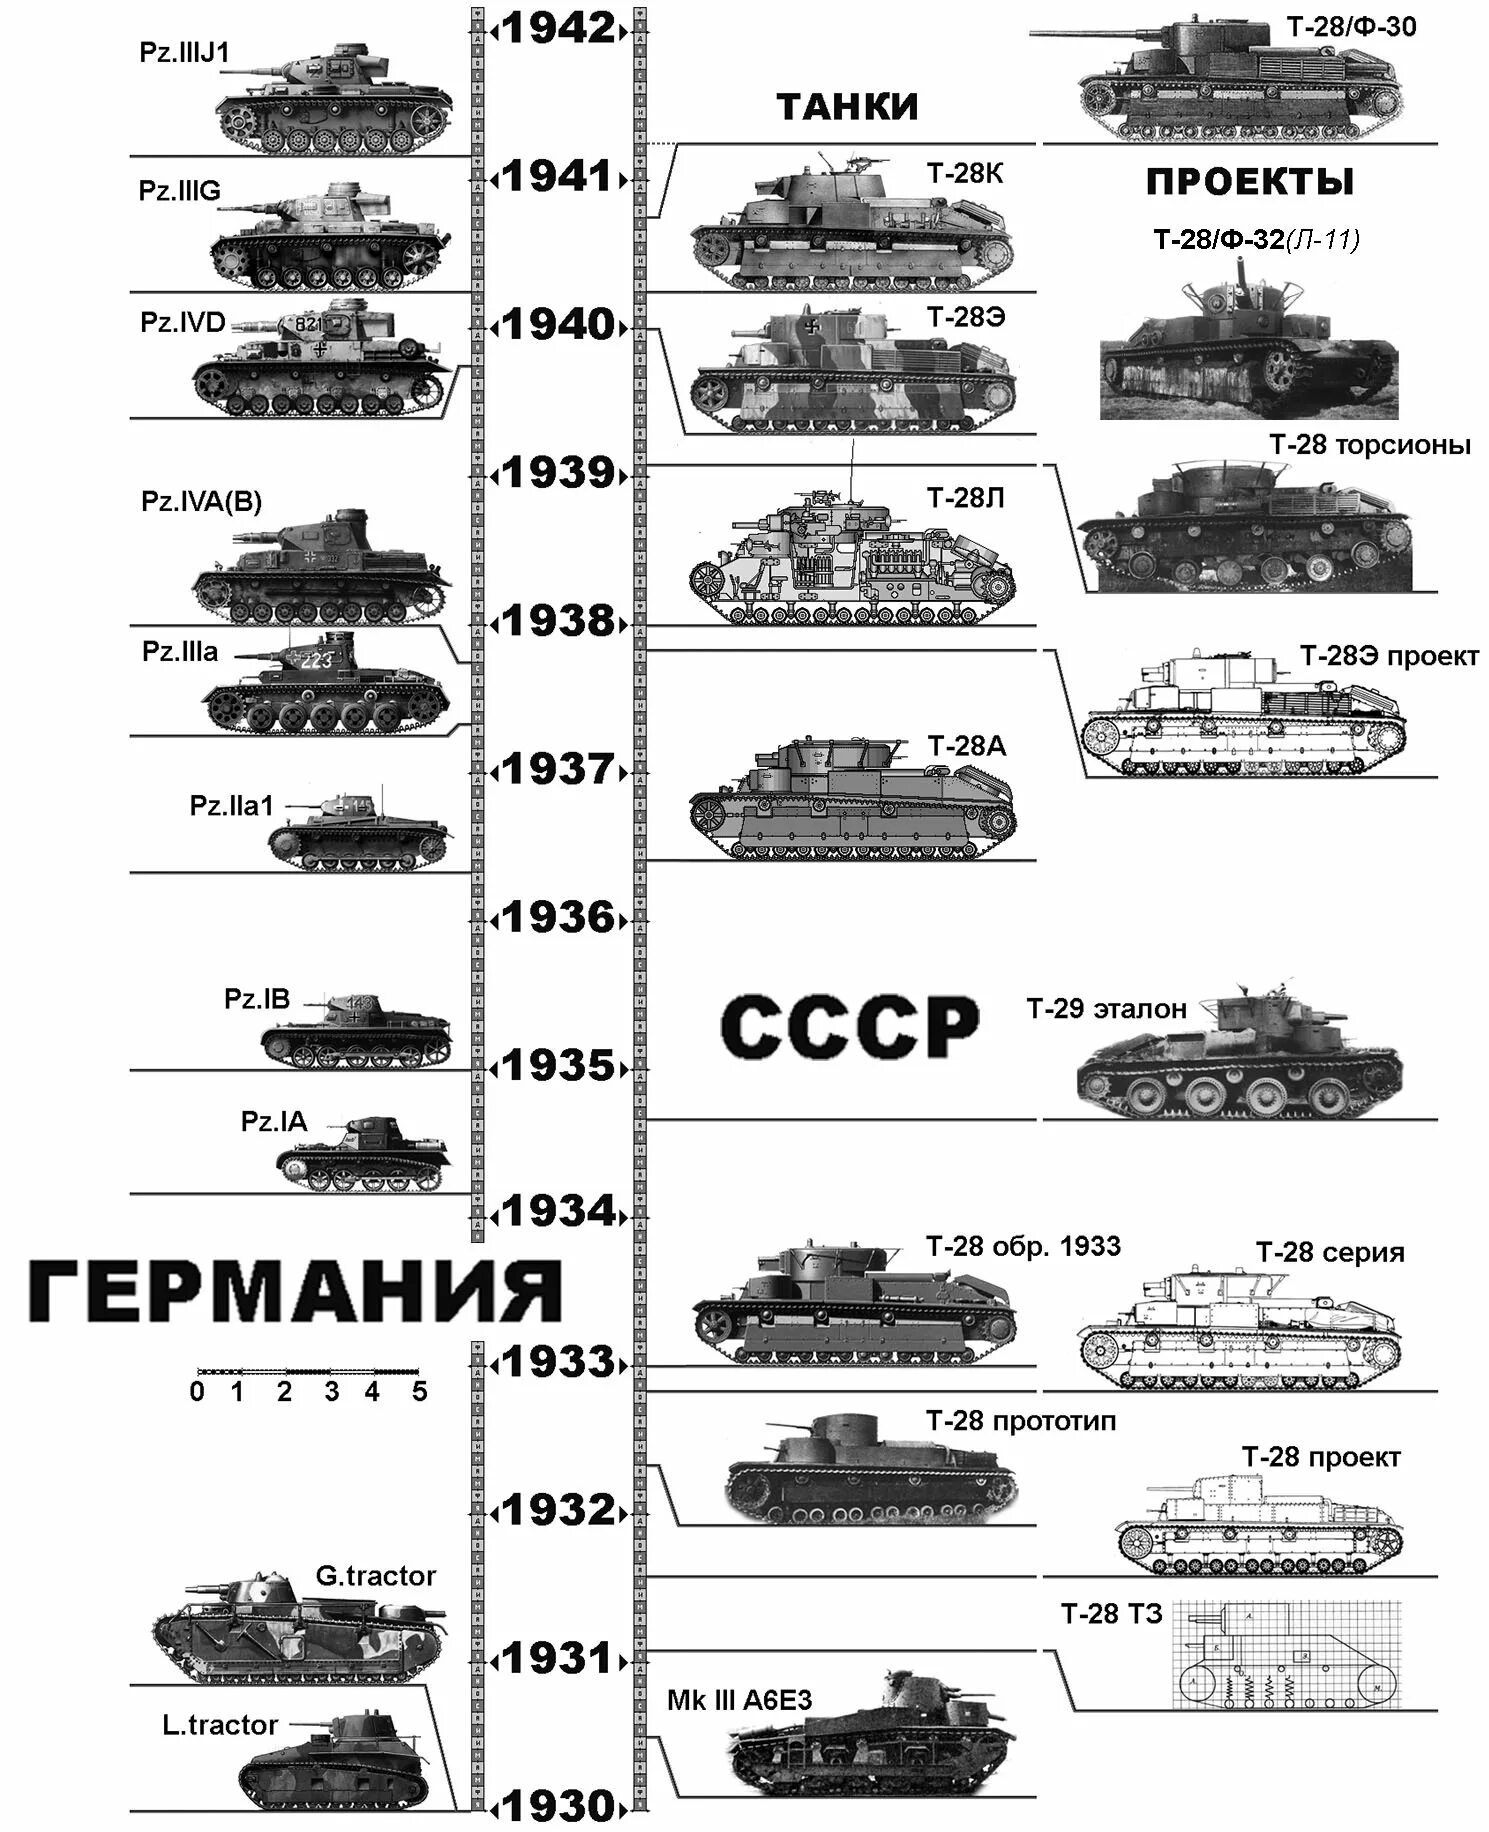 Какие танки были в 1941 году. Технические характеристики танков 2 мировой. Танки второй мировой войны 1939-1945 СССР И Германии. Таблица танков второй мировой войны Германии. Эволюция бронетехники Германии второй мировой войны.